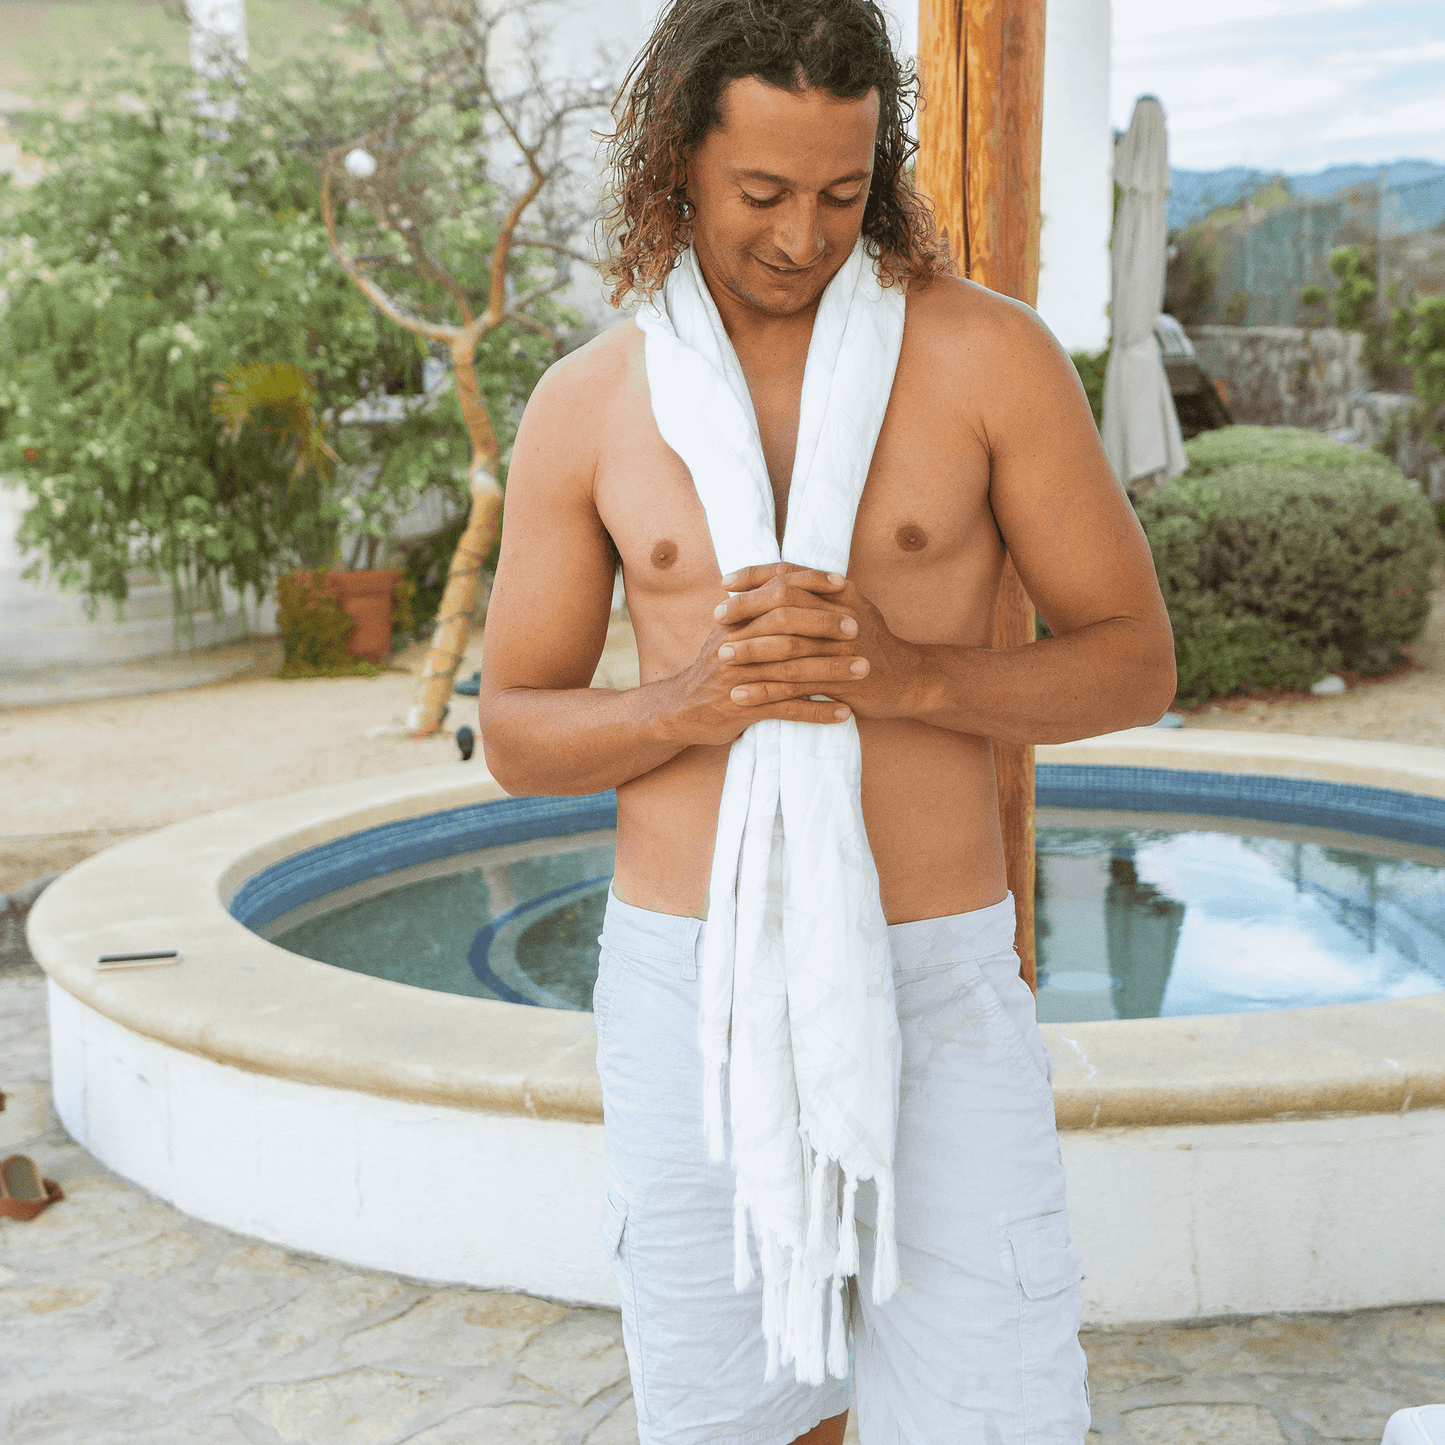 shirtless man using a white Turkish towel at a luxury resort